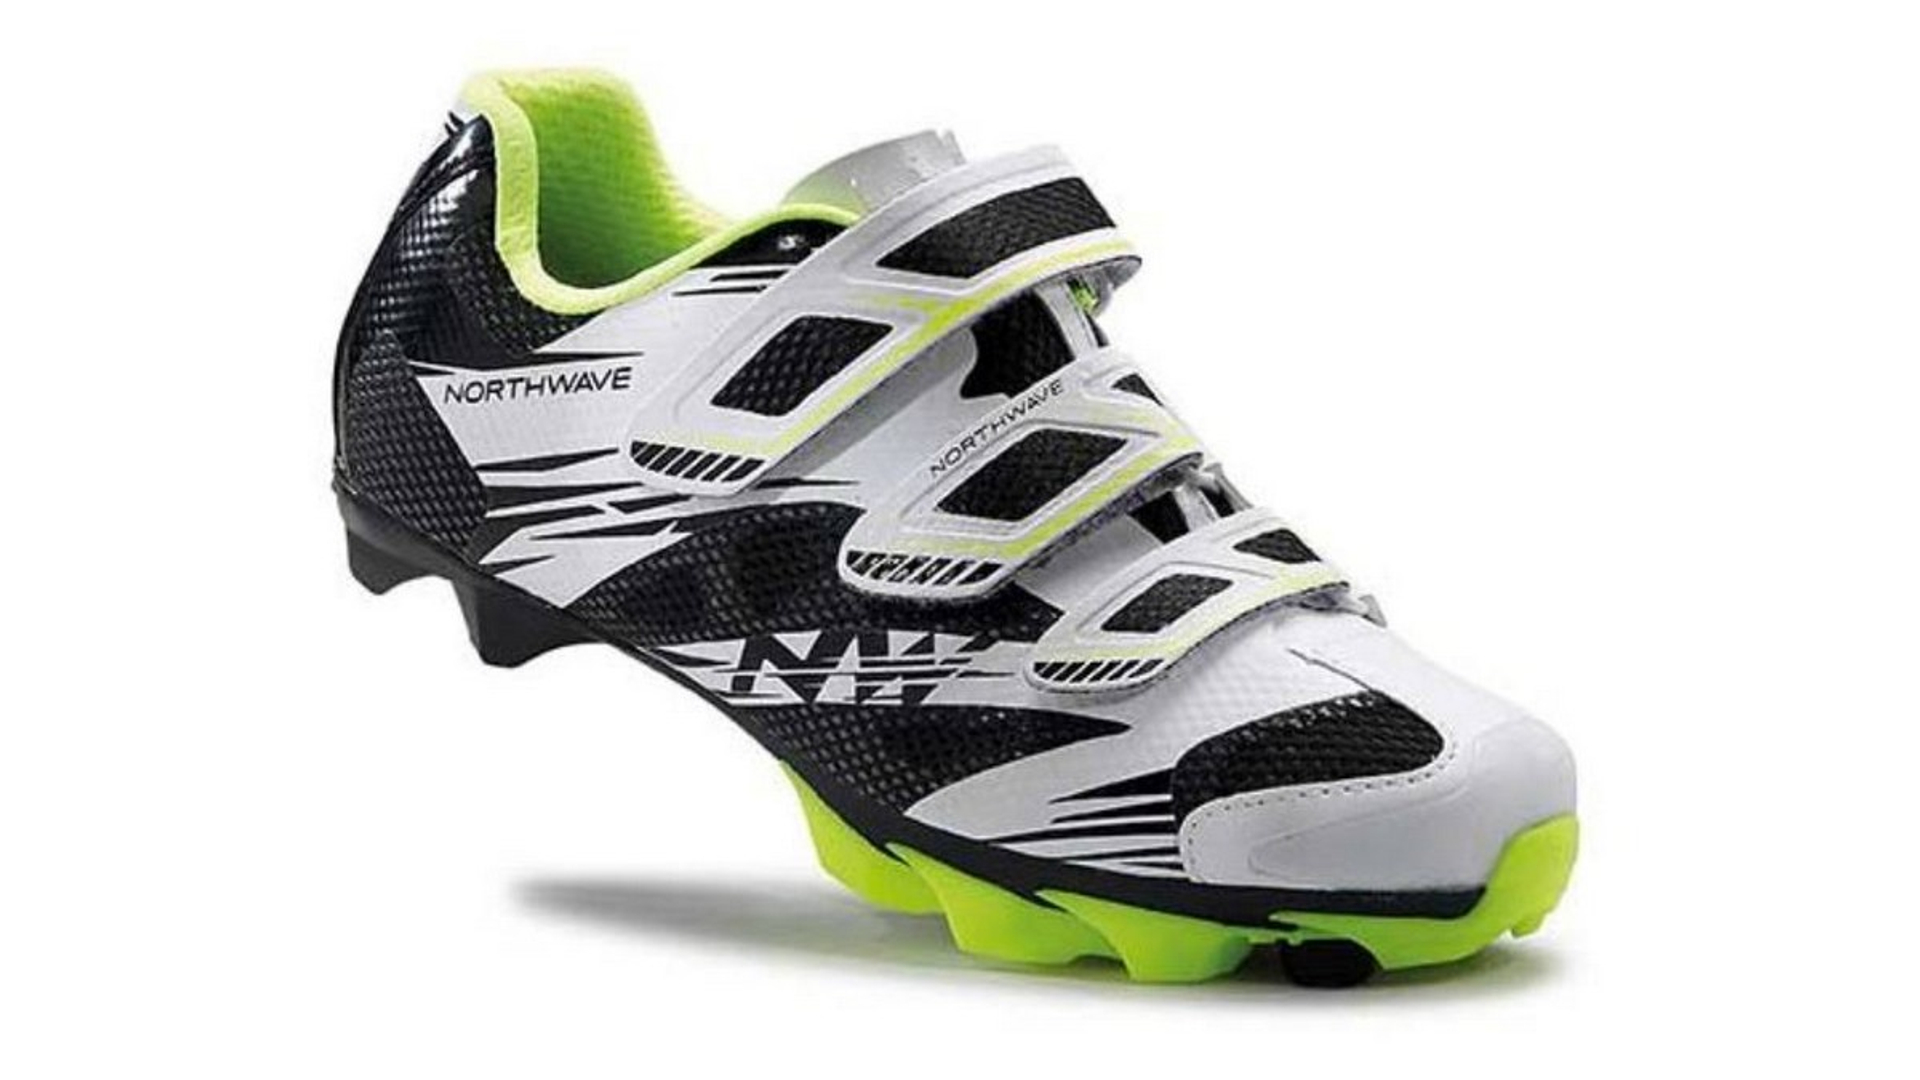 NORTHWAVE MTB Katana 2 3S WMN női kerékpáros cipő, fehér/fekete/sárga fluo, 36